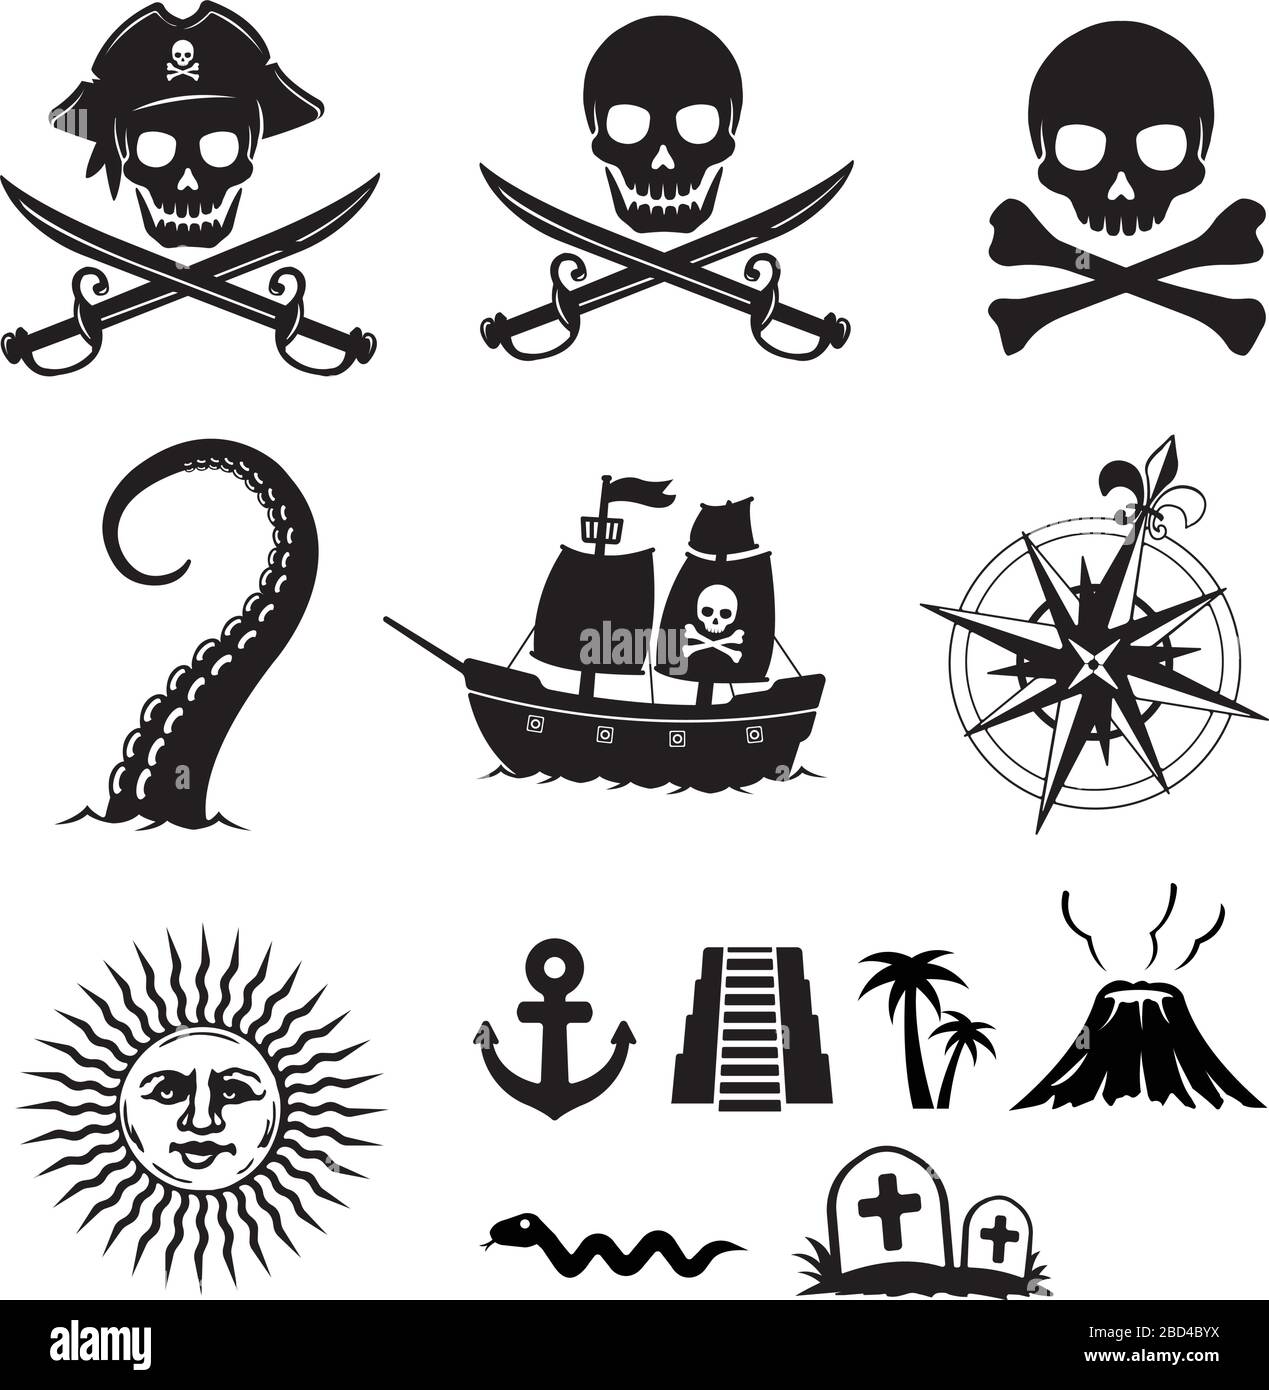 Piraten flache Illustration Set (Schädel, Anker, Vulkan, Schiff, Kompass, Sonne, kraken usw.) Stock Vektor